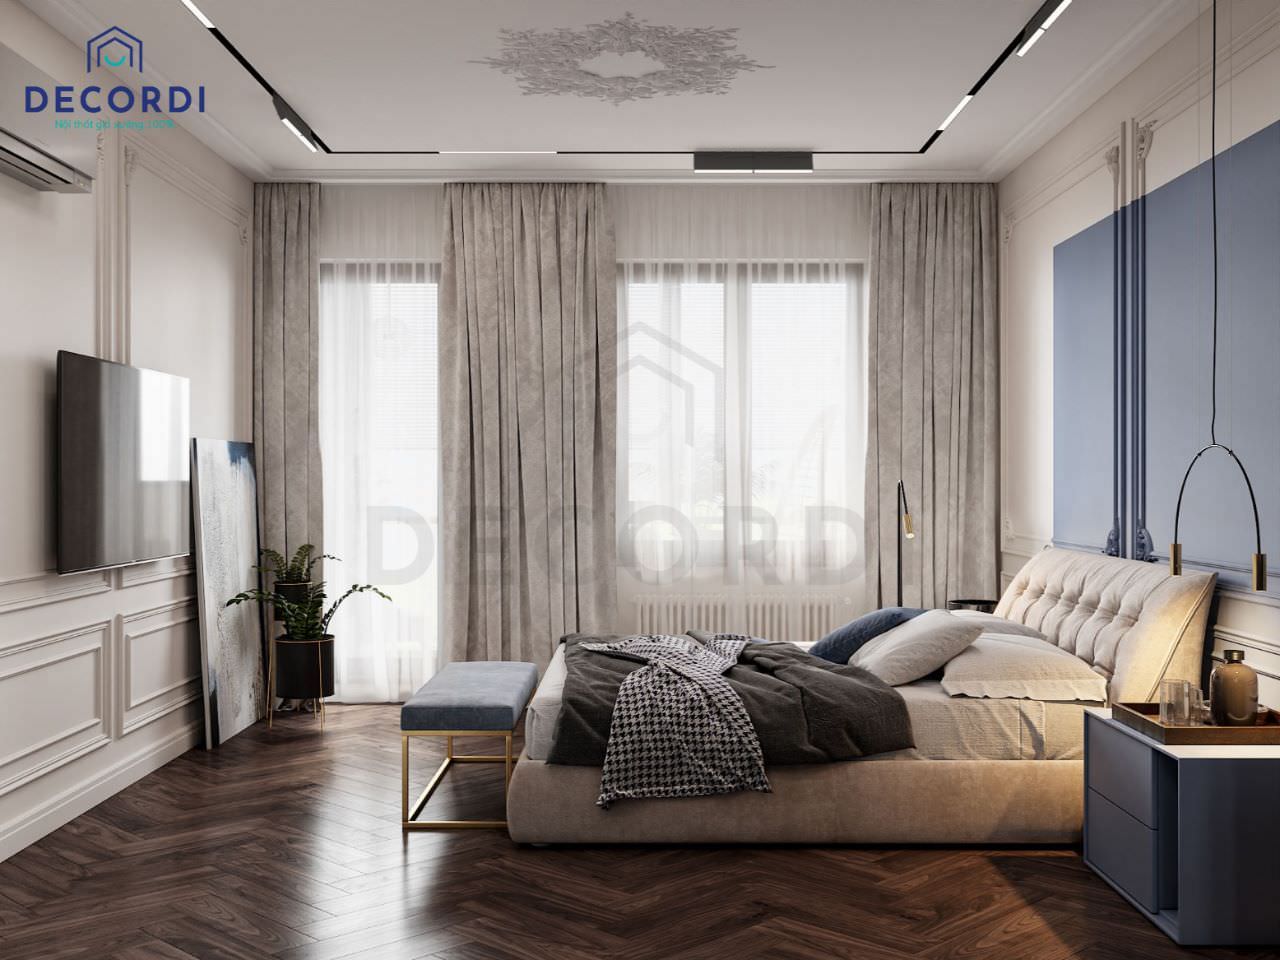 Thiết kế nhà 40m2 1 phòng ngủ phong cách tân cổ điển đơn giản cho nam với tông màu xanh phối trắng nhẹ nhàng